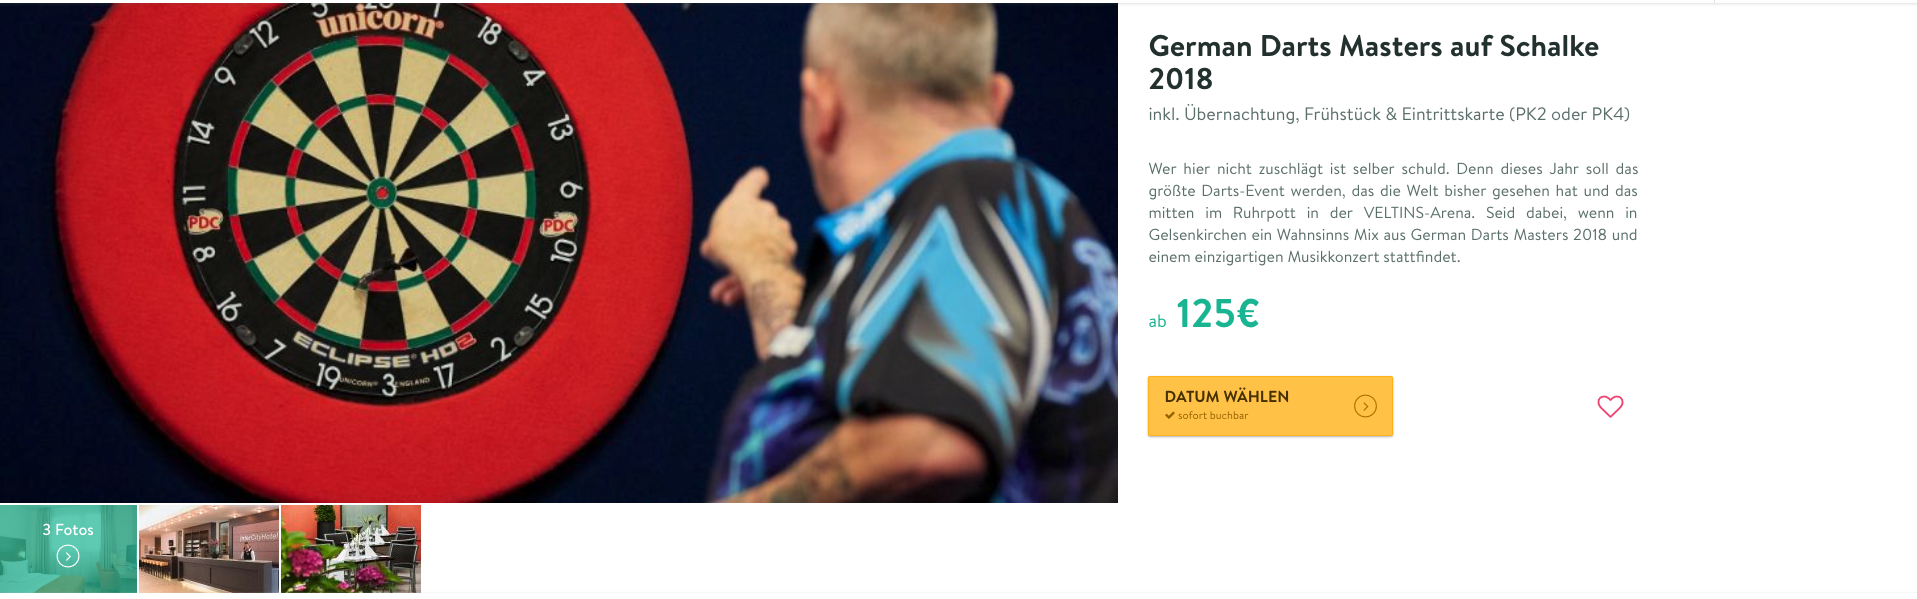 German Darts Masters 2 Tage auf Schake